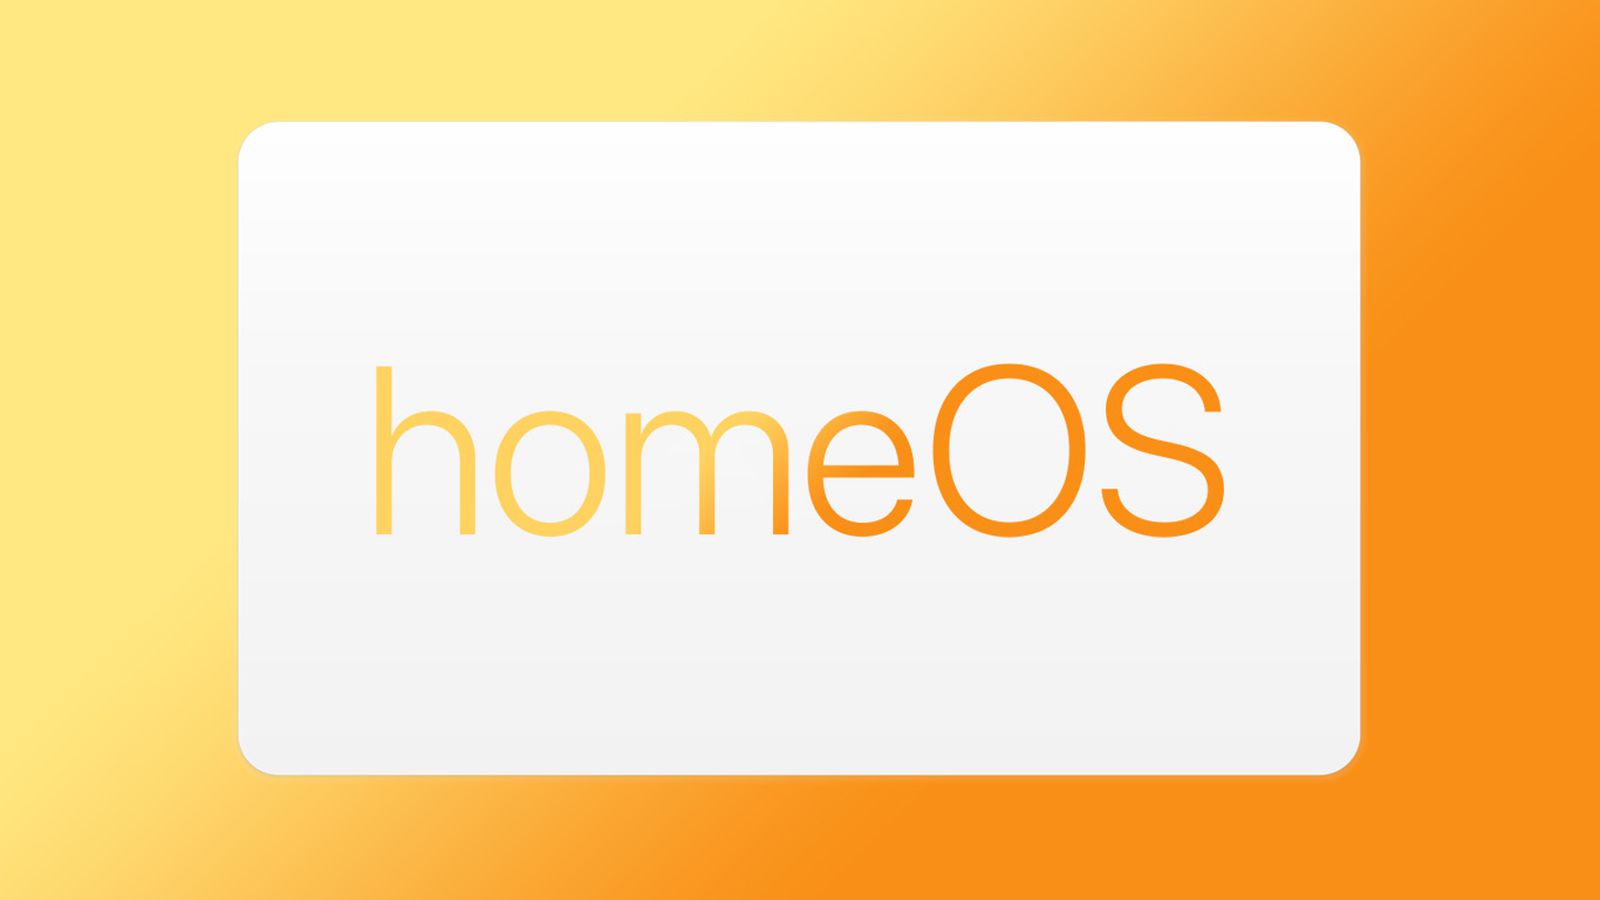 Czy nadchodzi 'homeOS' od Apple? Ogłoszenia o pracę w firmie zawierają wzmianki o systemie operacyjnym dla inteligentnych domów